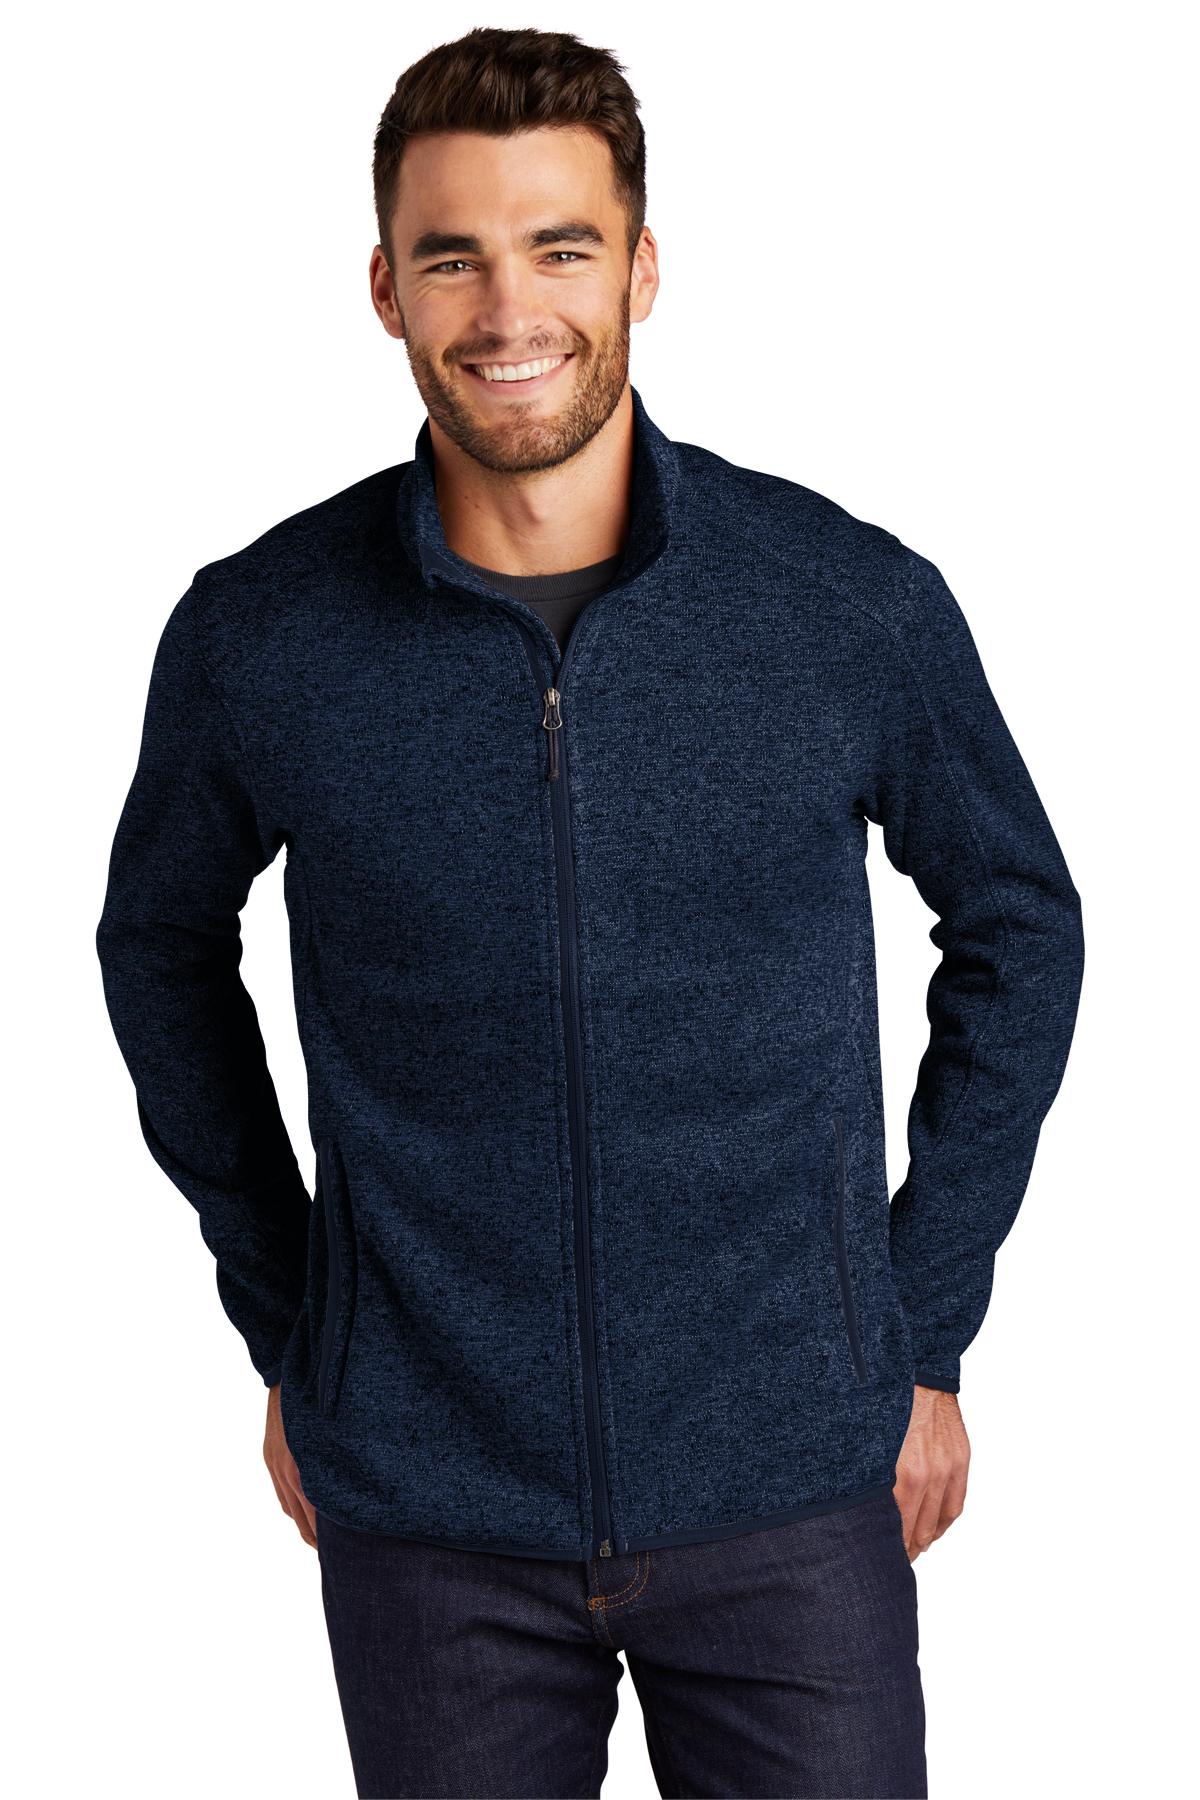 Port Authority Sweater Fleece Jacket | Product | SanMar